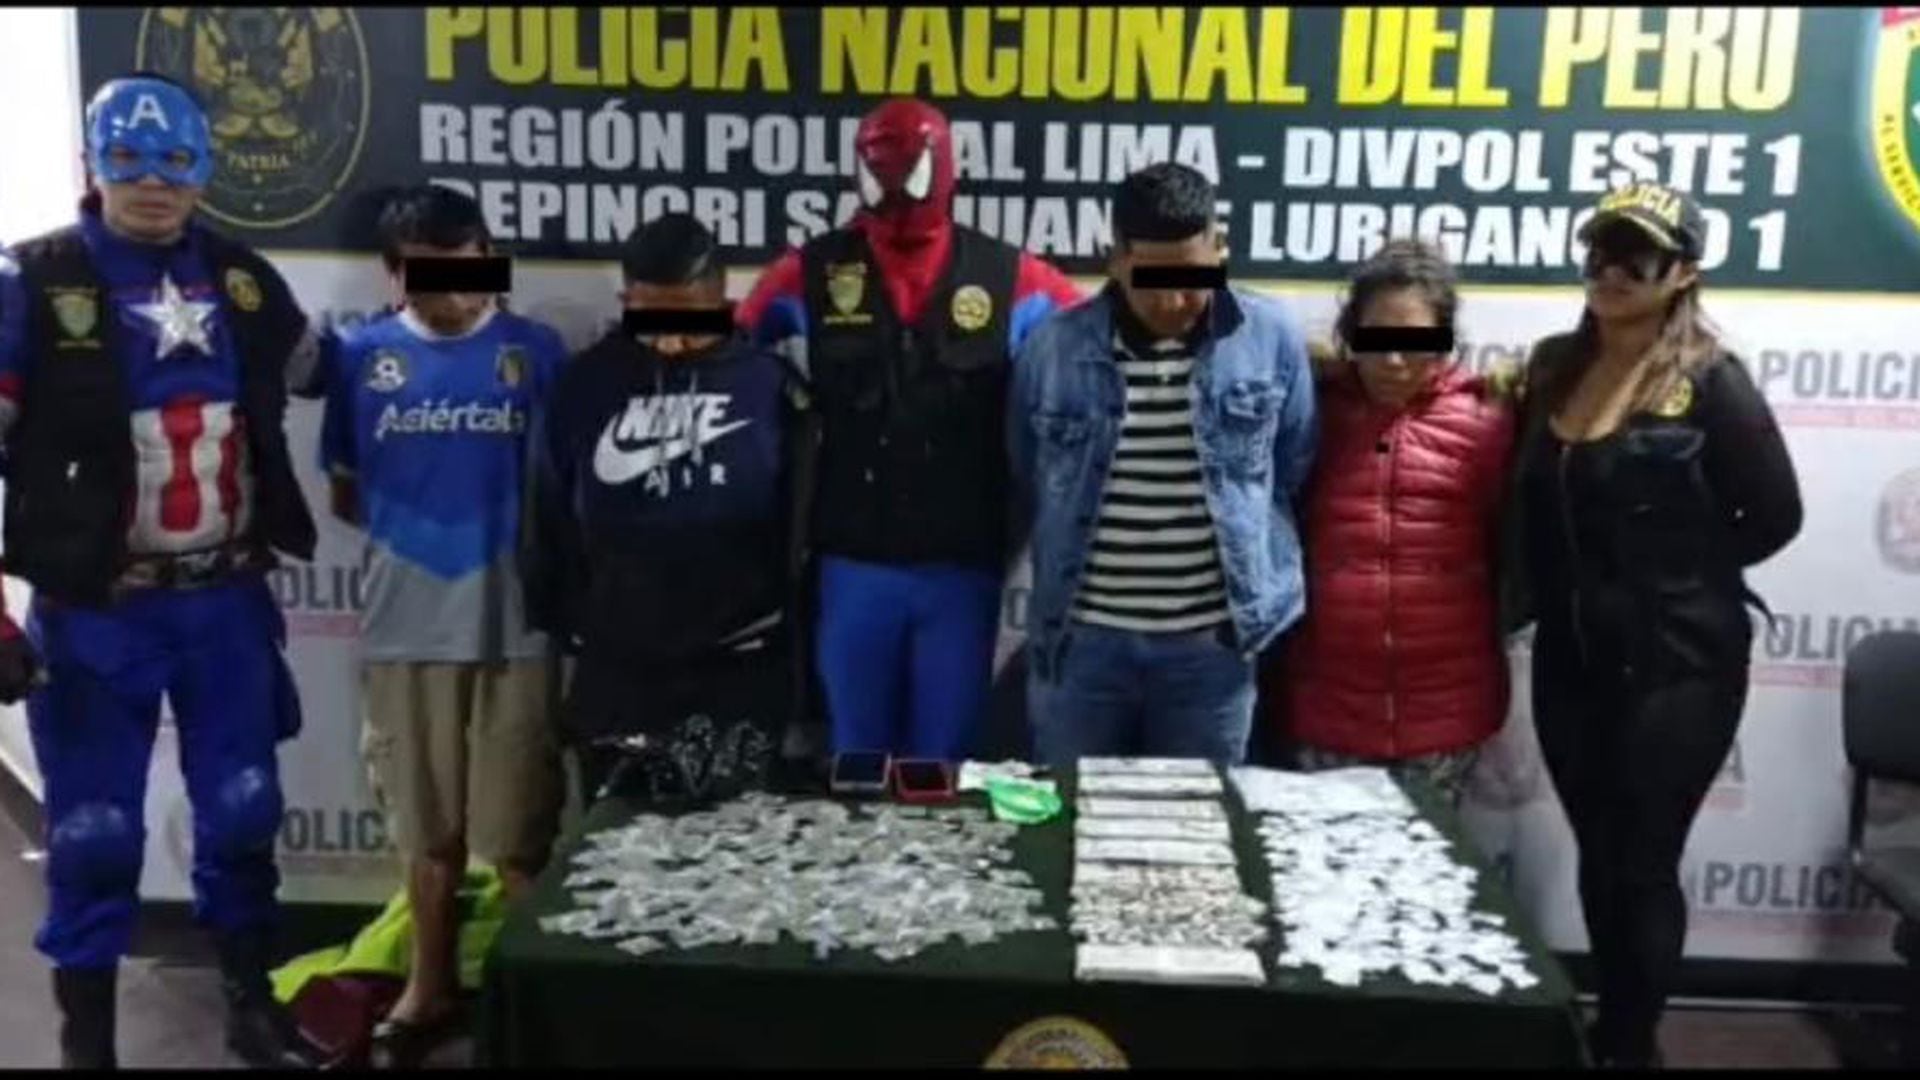 Disfrazados como “Los Vengadores” policia desarticula una banda criminal  que vendia drogas